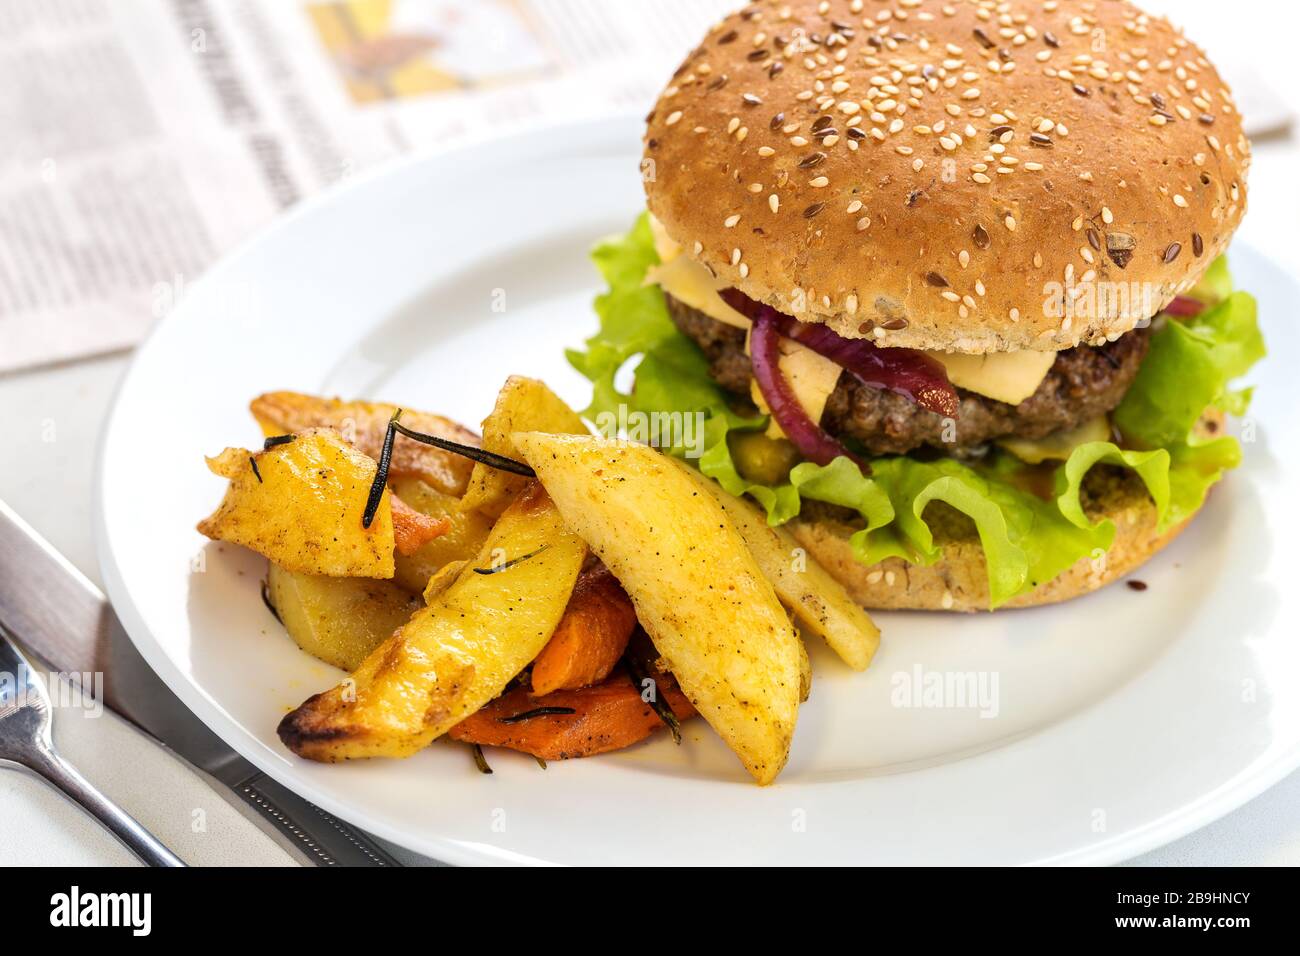 Délicieux hamburger de bœuf grillé avec des pommes de terre servies sur une plaque avec espace de copie Banque D'Images